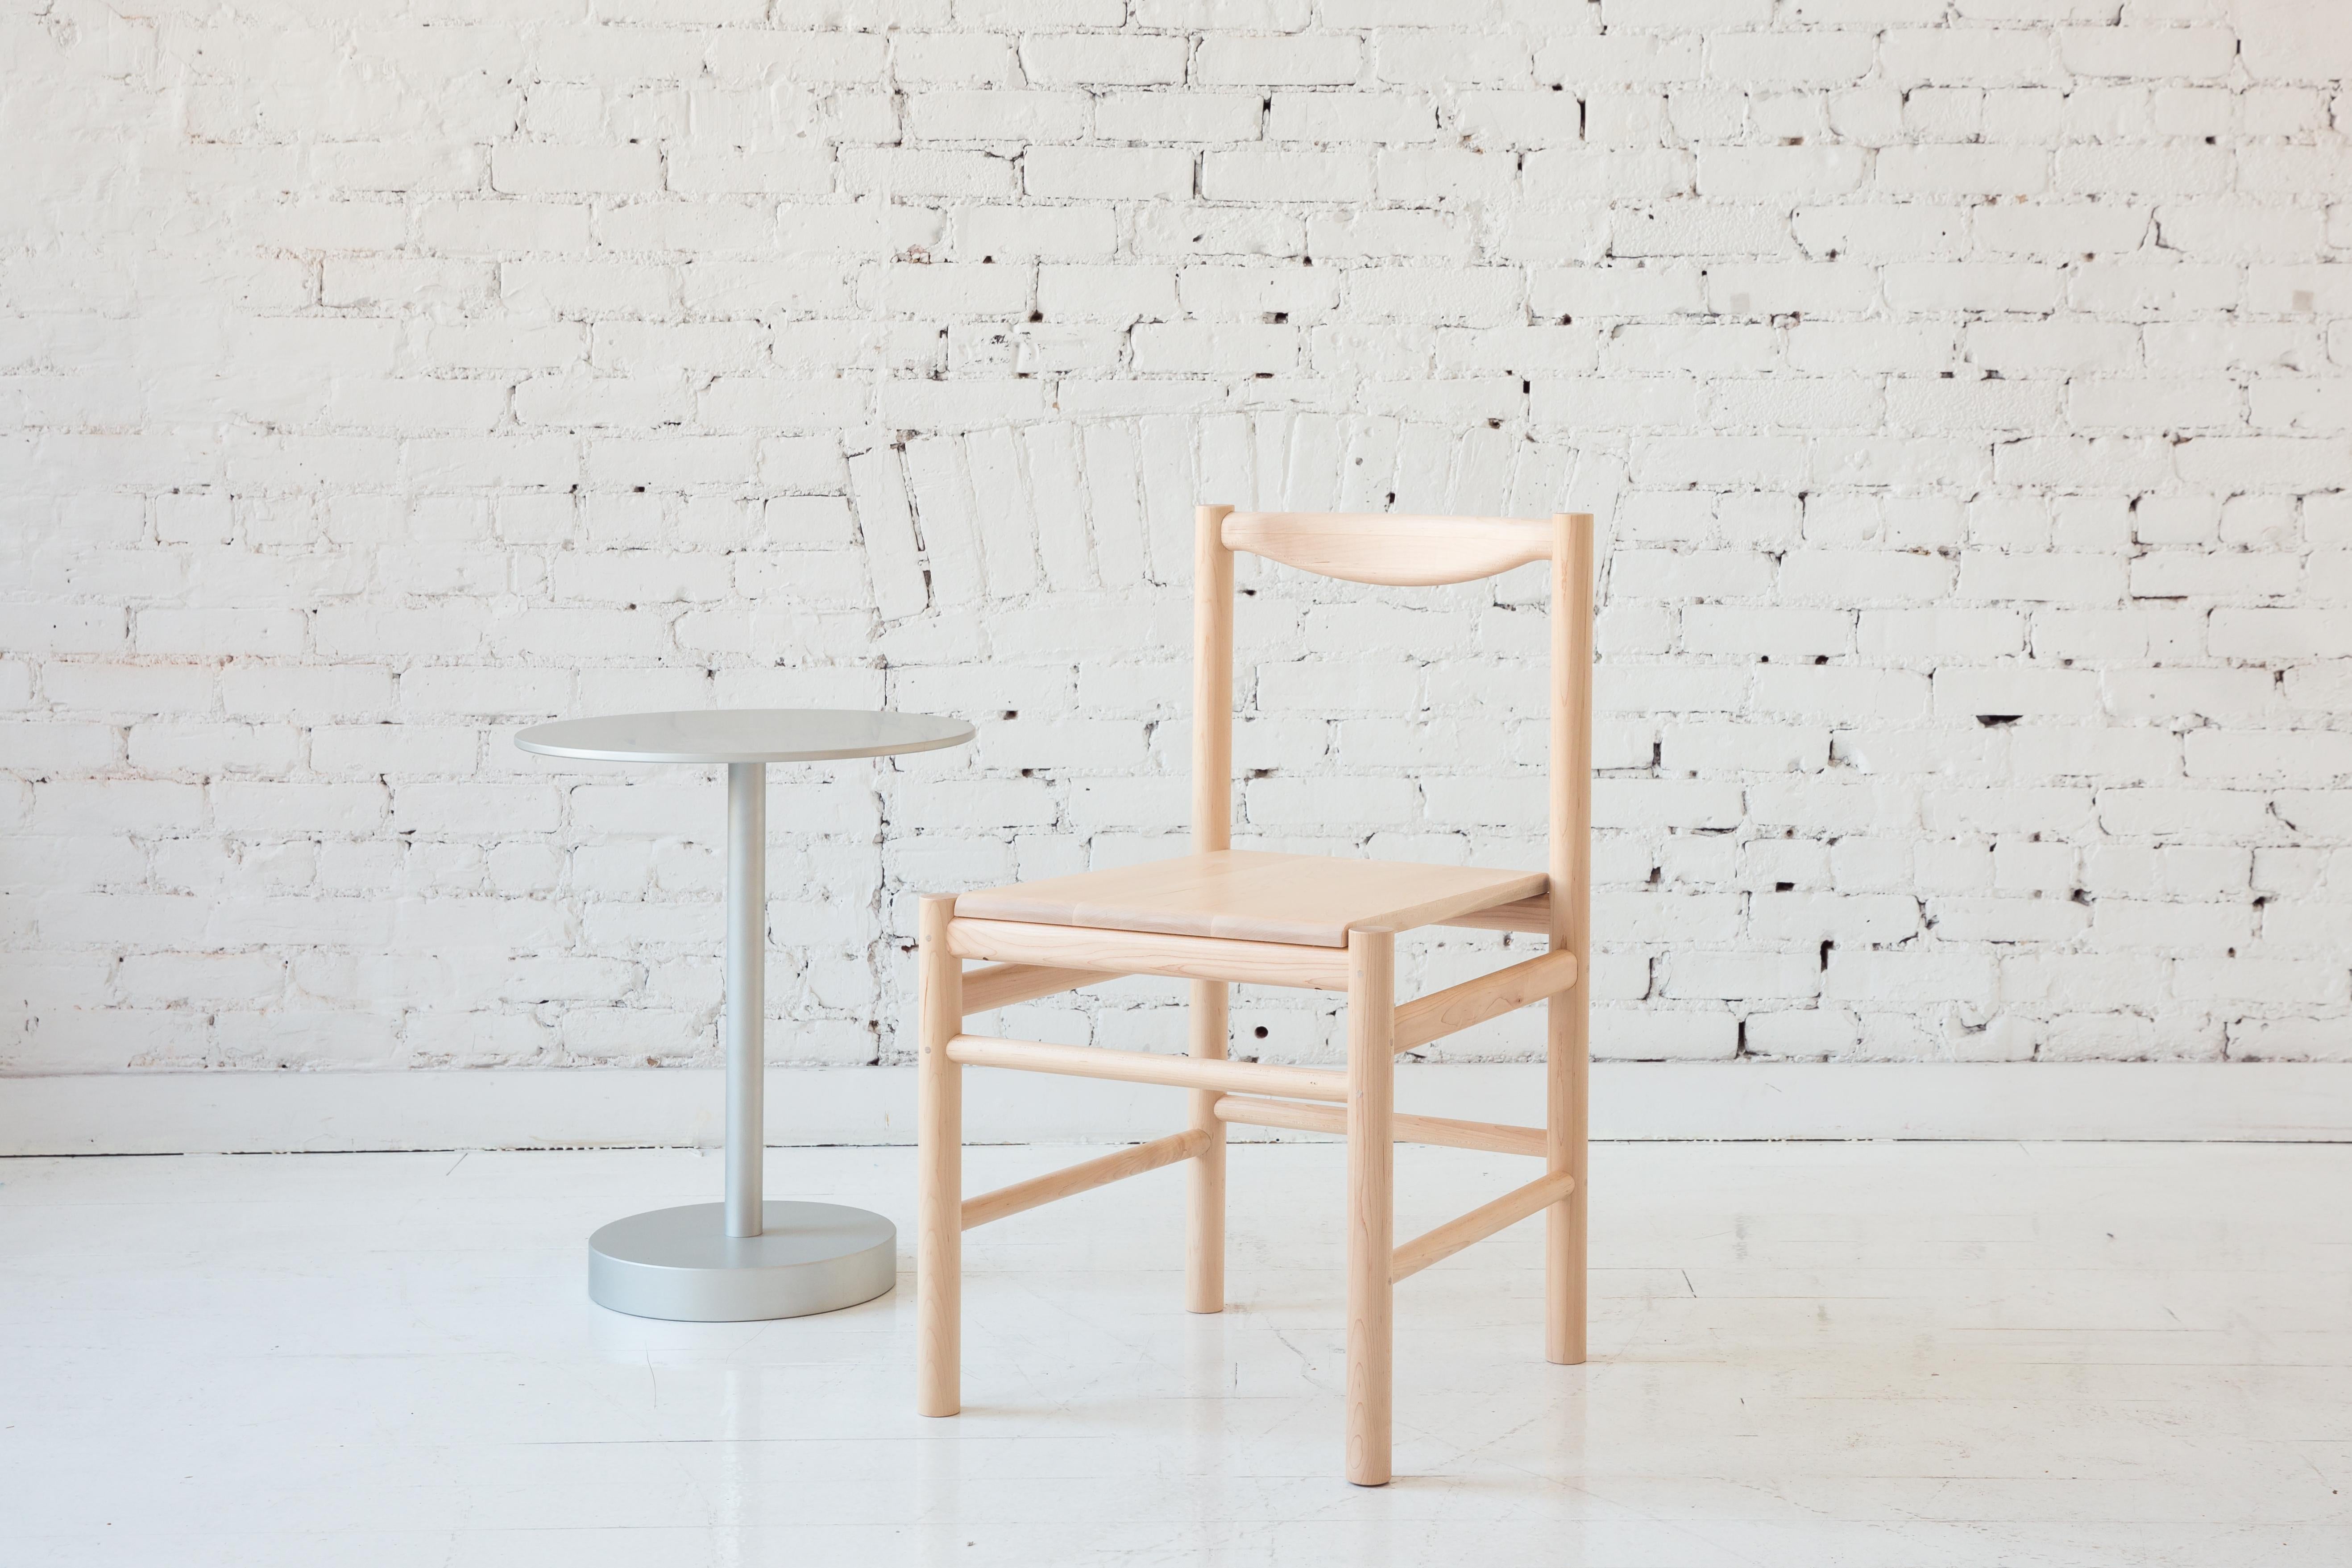 Beistellstuhl aus Holz im Shaker-Stil mit bequemer, konturierter Rückenlehne. Wahlweise mit einer einfachen Holzsitzschale oder einer Sitzschale mit einem flachen Leder- oder Shearling-Polster. Die Einfachheit dieses Stuhls macht ihn vielseitig